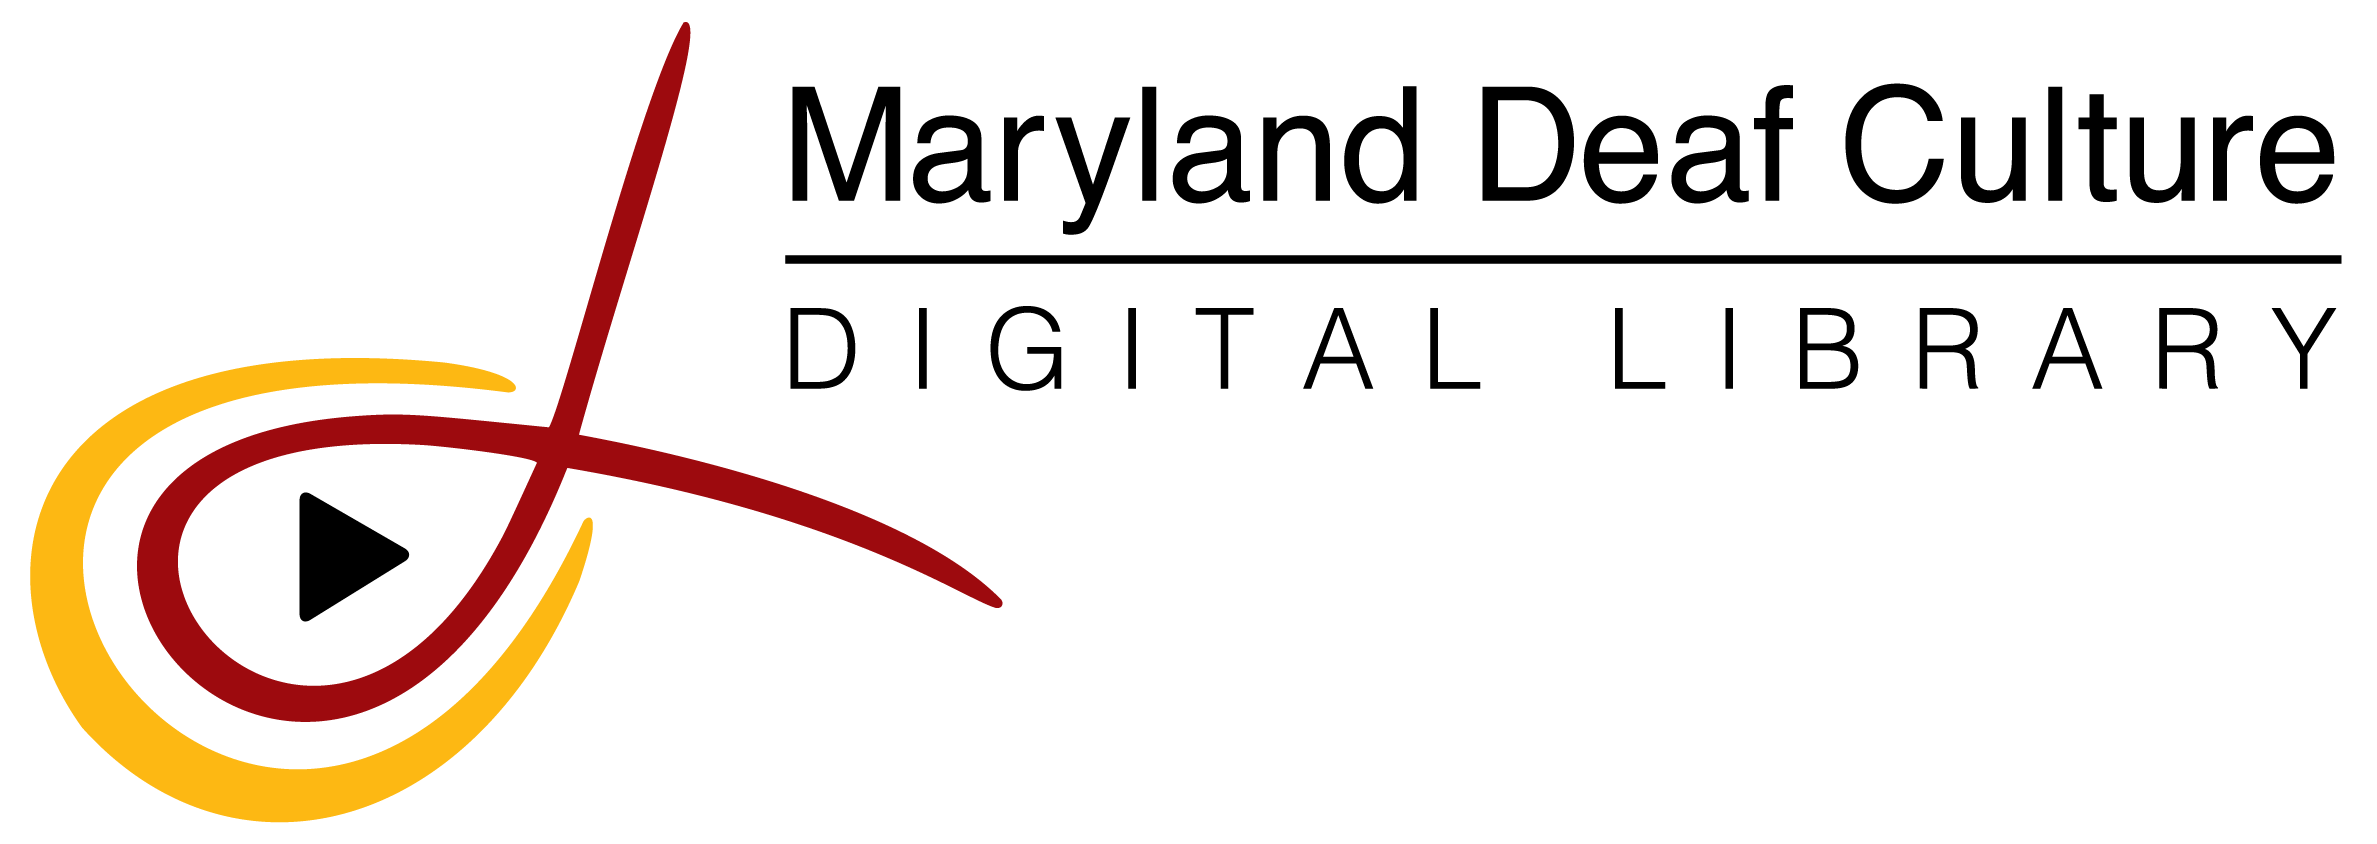 Maryland-DCDL_2019-color-logo.png